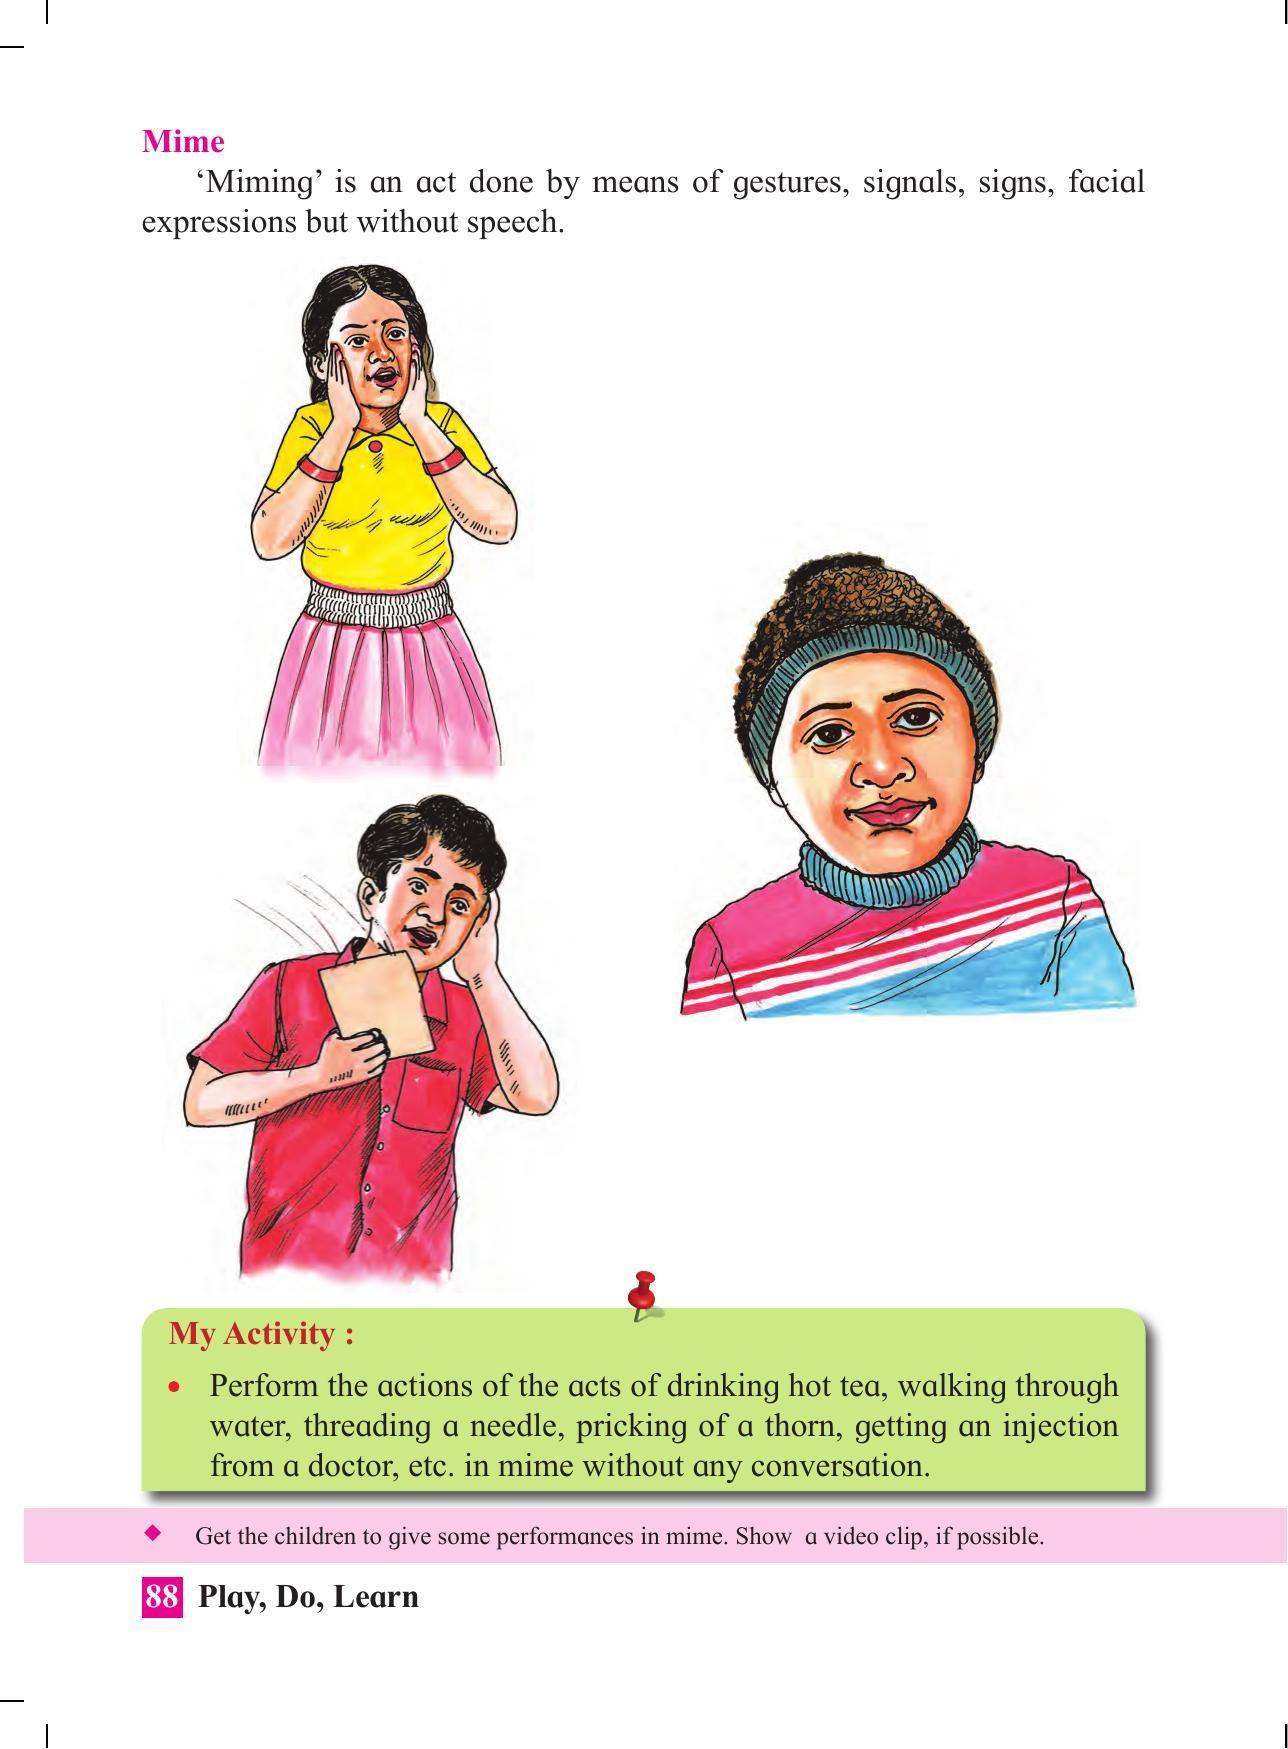 Maharashtra Board Class 4 Play Do Learn (English Medium) Textbook - Page 97